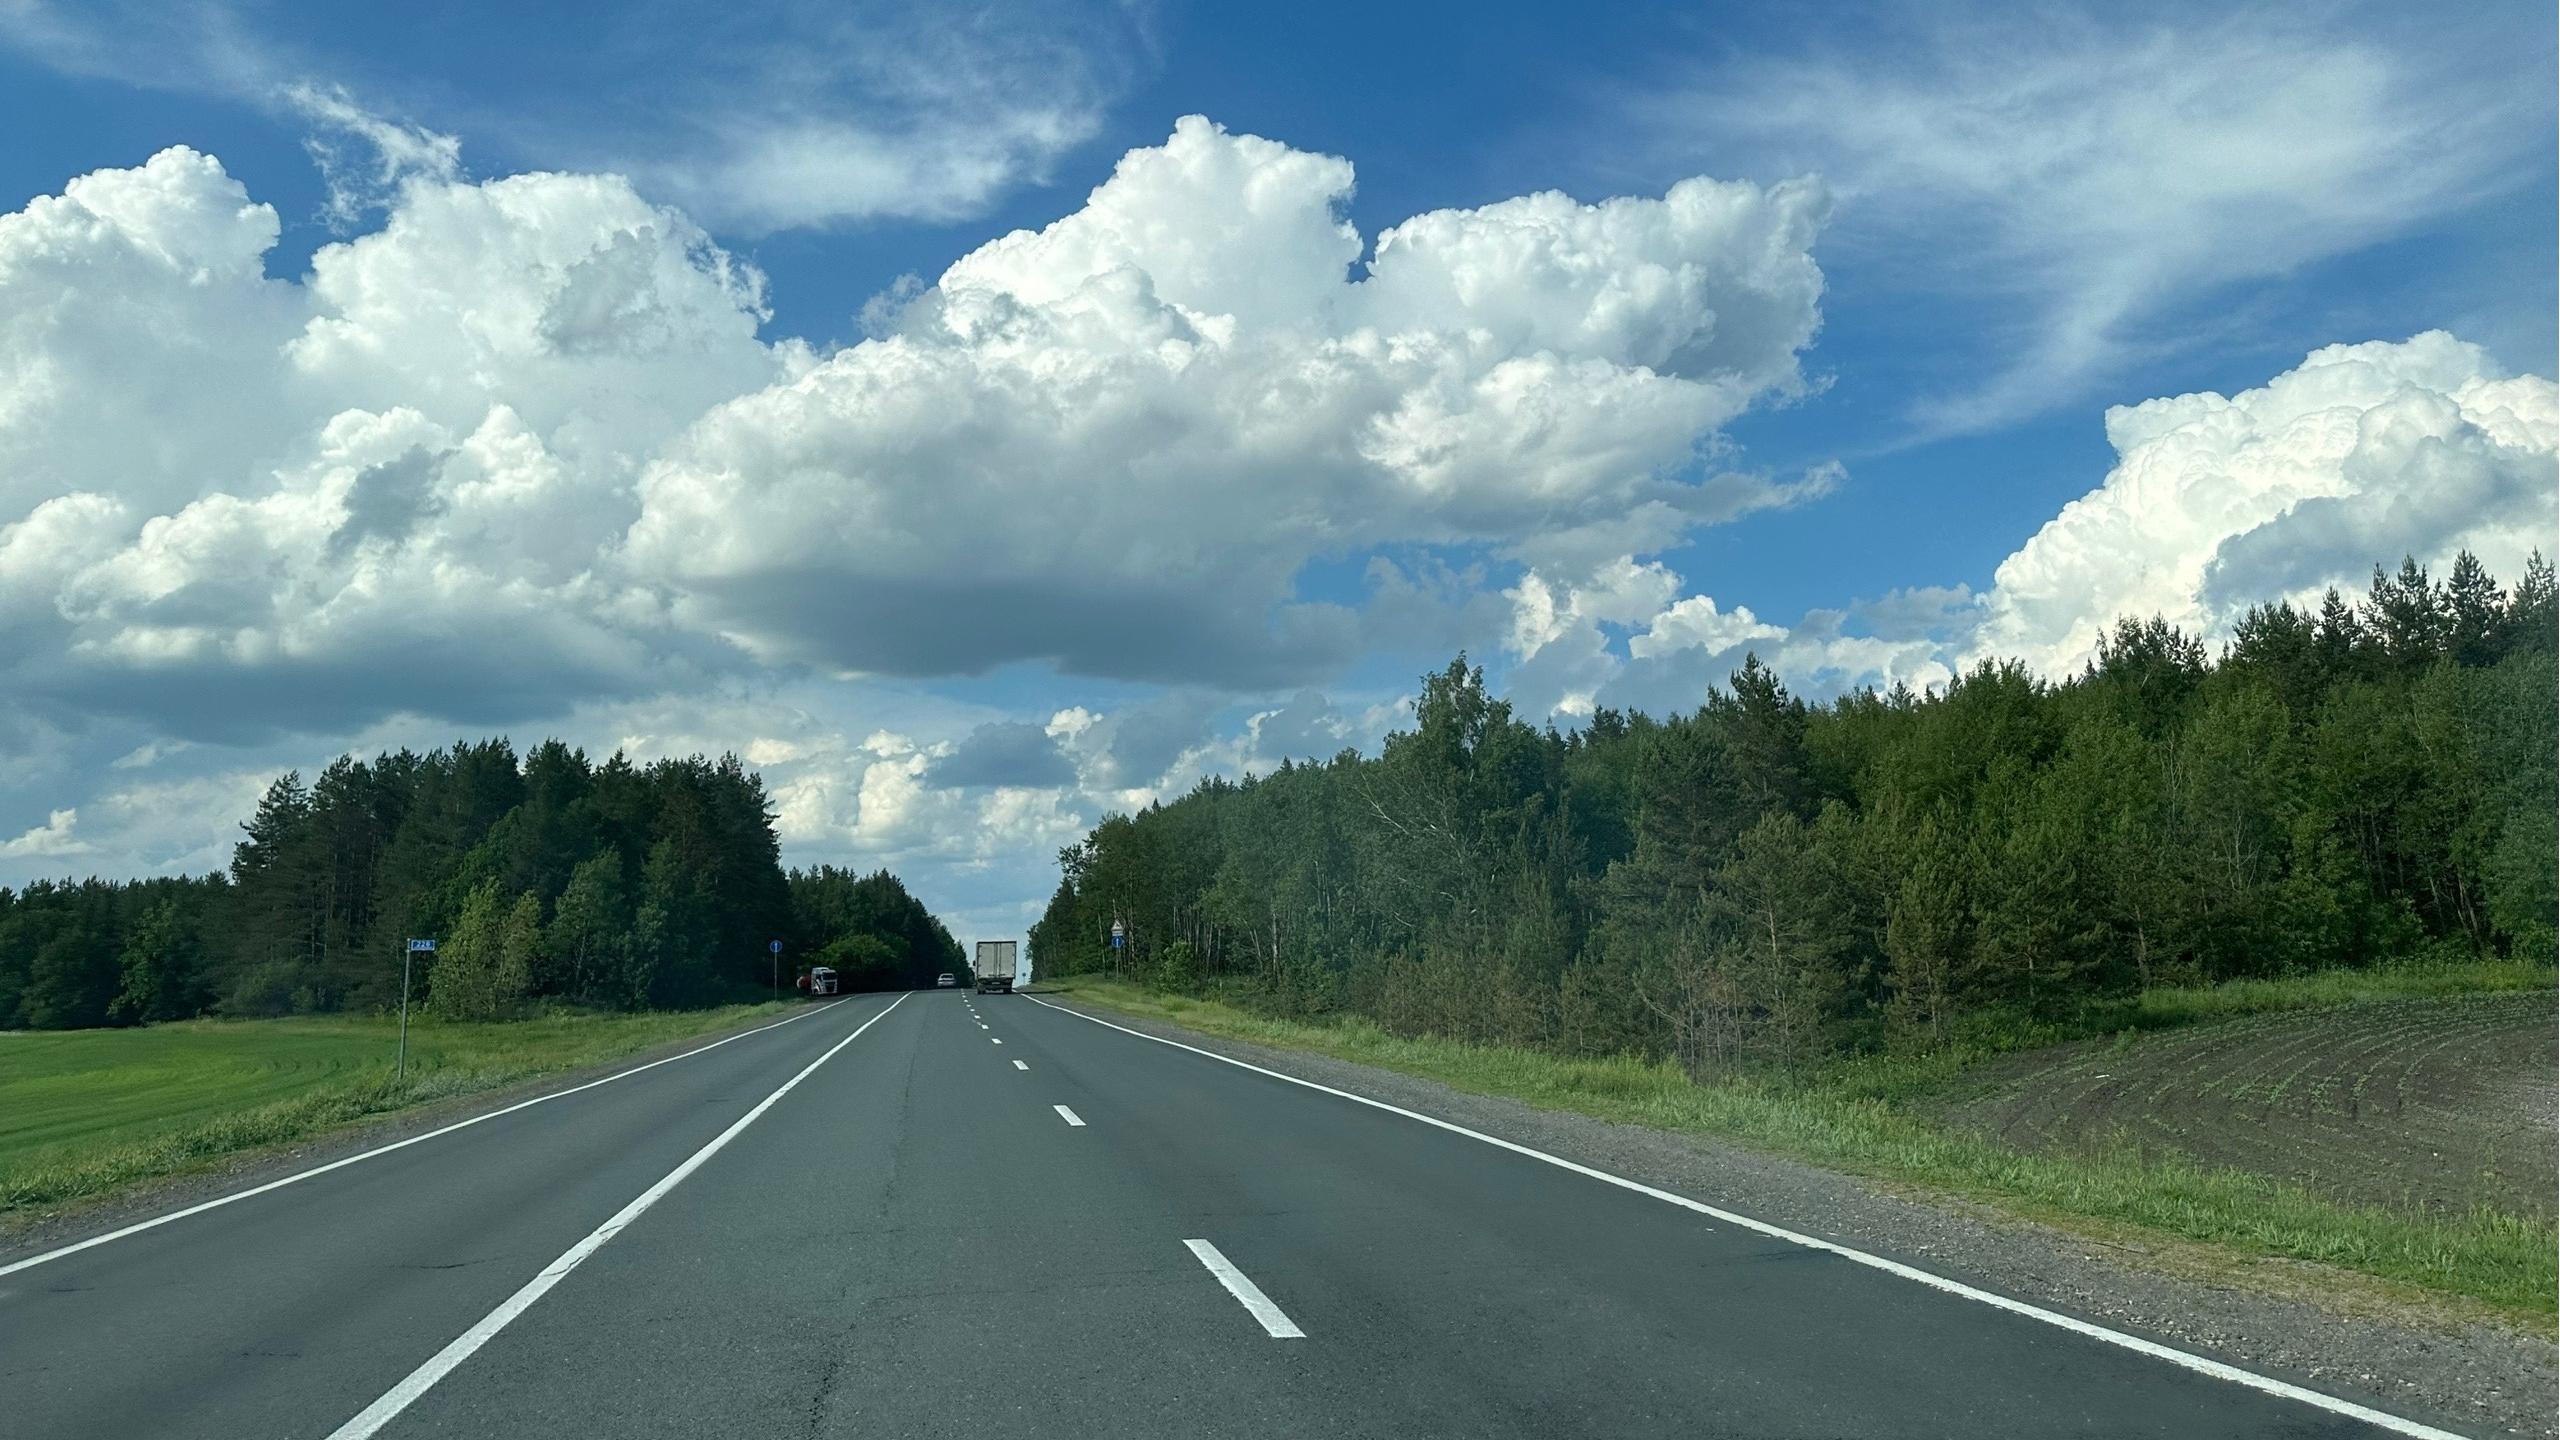 88 водителей выехали на встречную полосу за минувшие сутки в Ульяновской области 